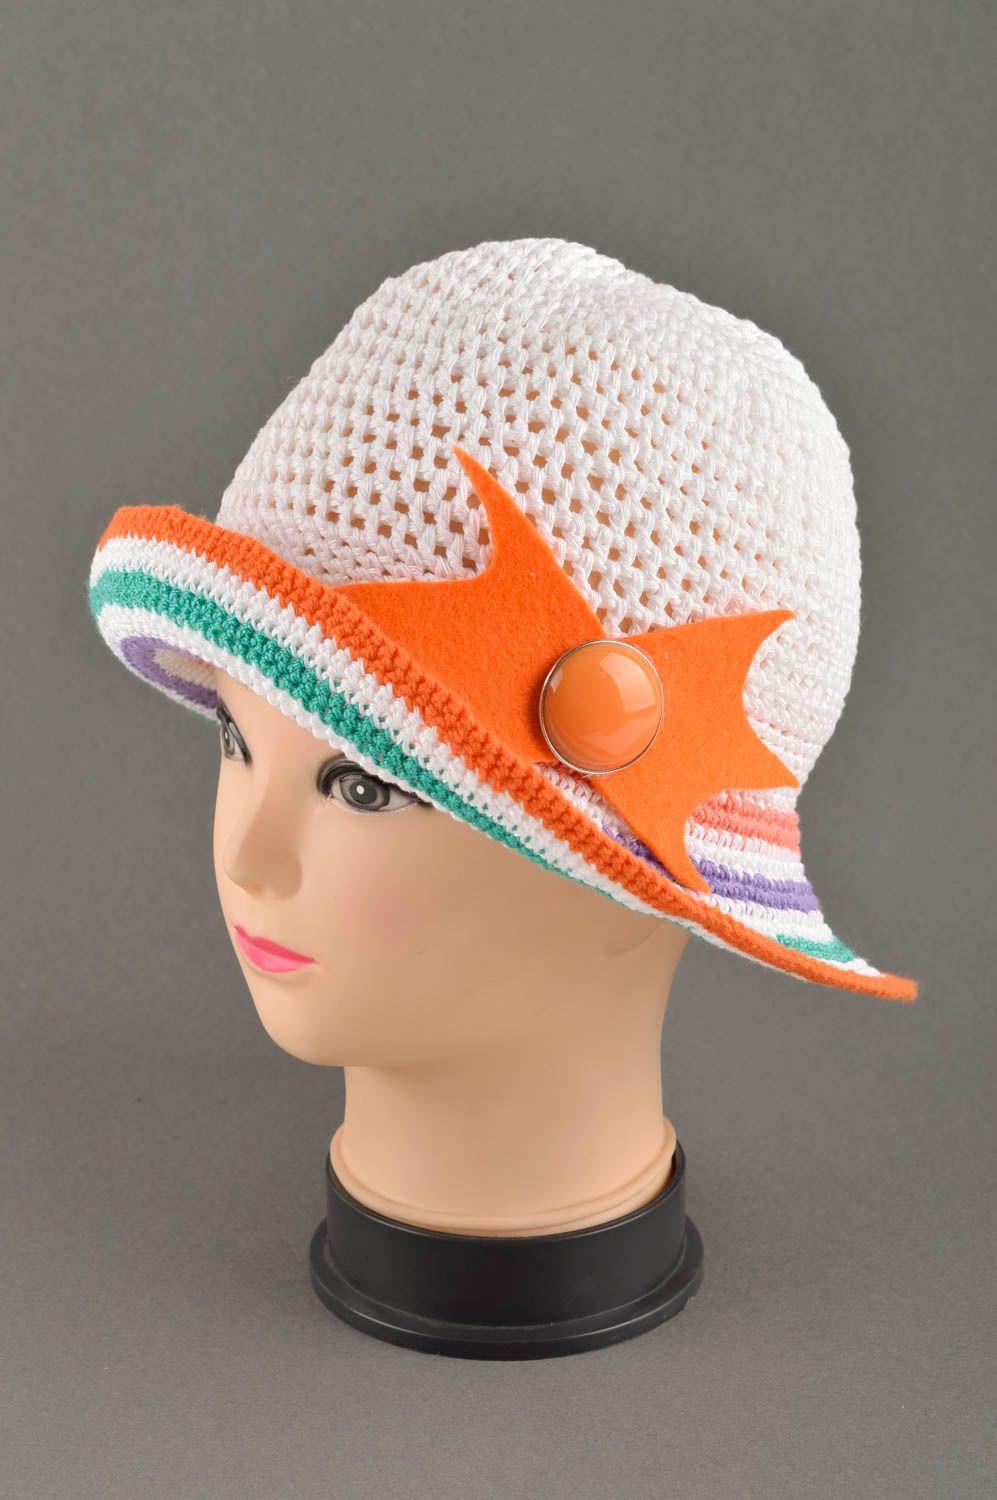 Handmade hat summer hat gift ideas designer cap summer headwear designer hat photo 5